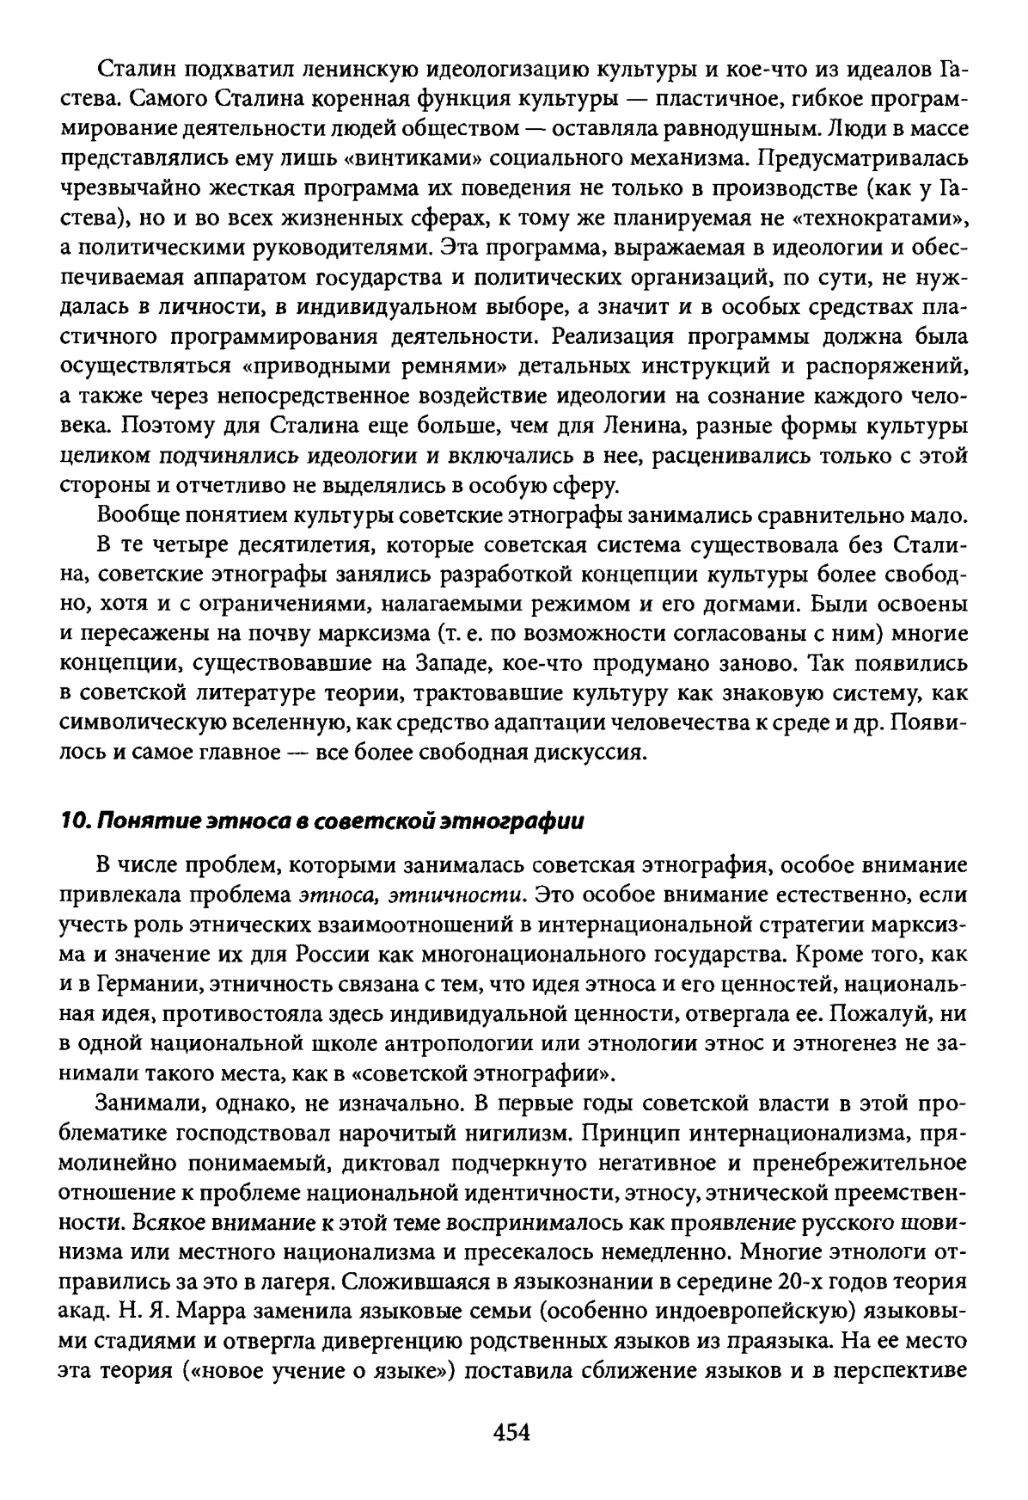 10. Понятие этноса в советской этнографии